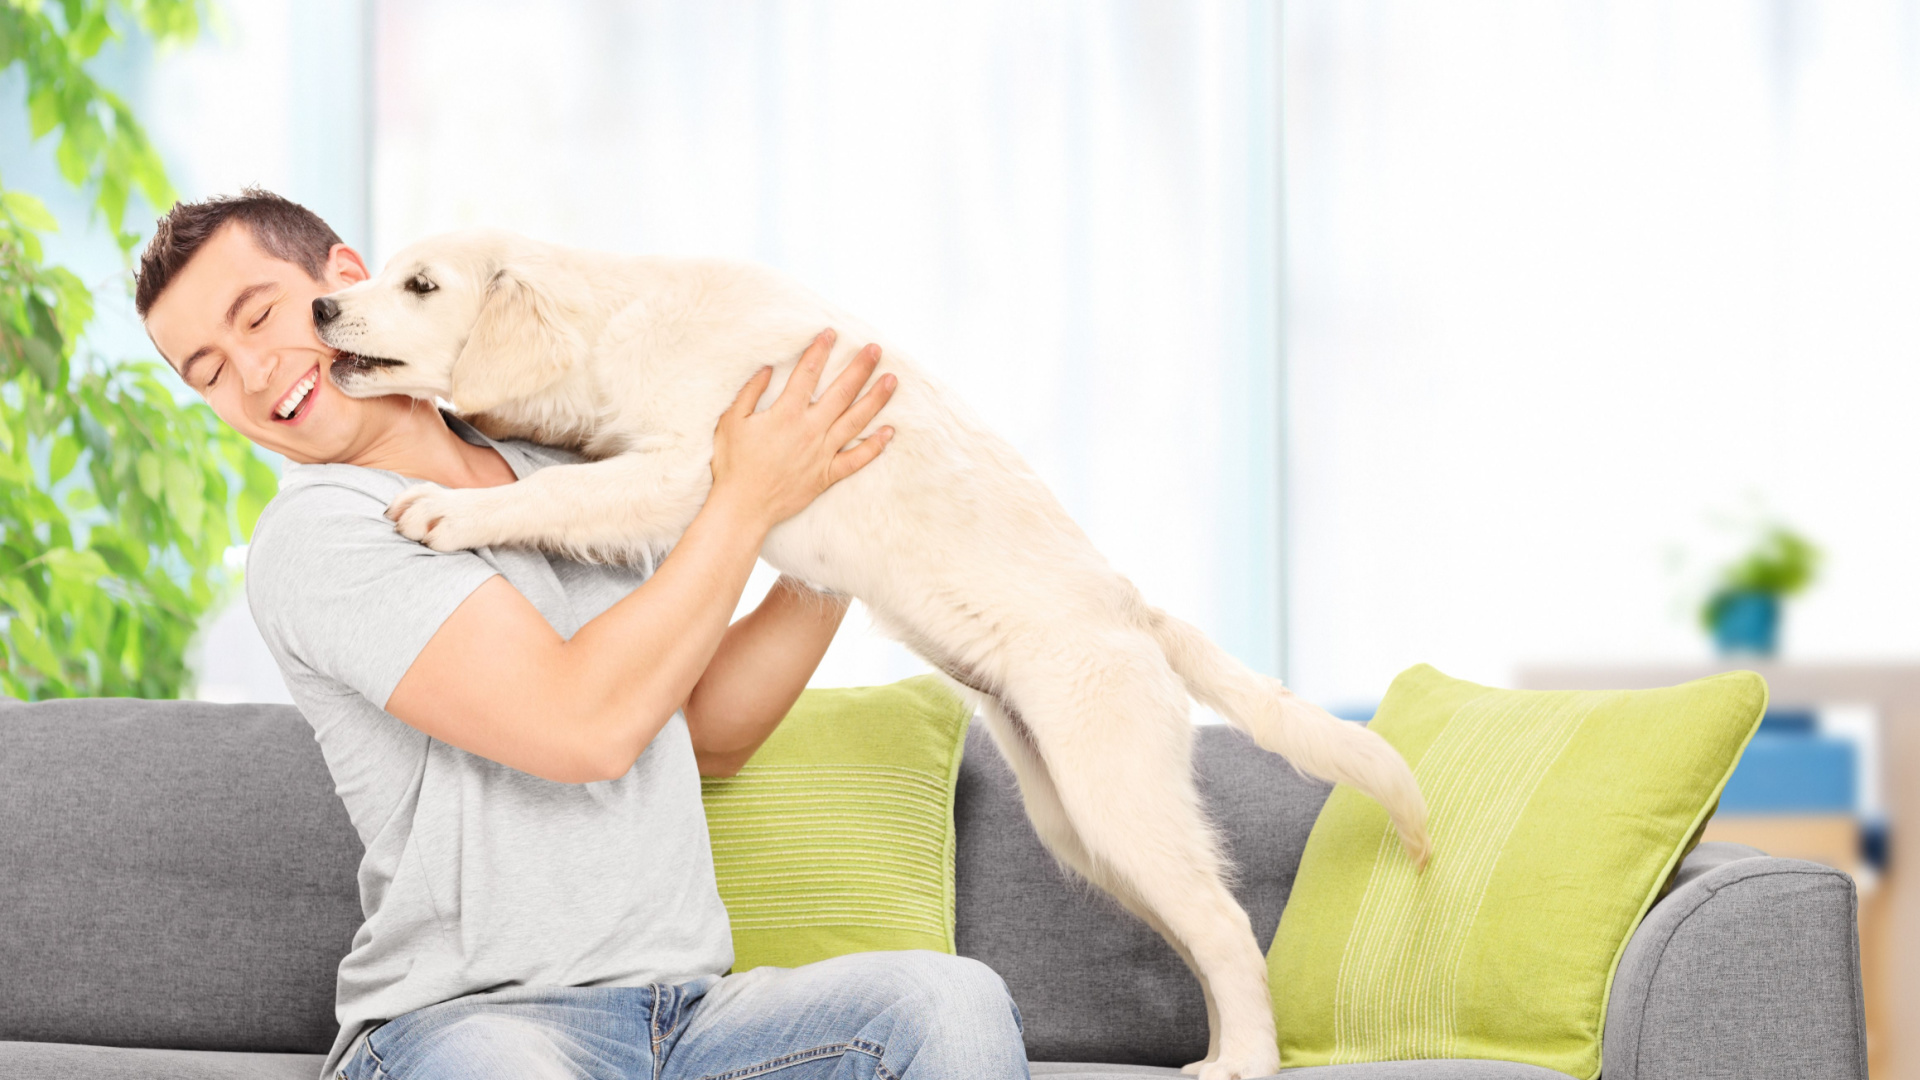 Morar em apartamento não é impedimento para cuidar de cachorros. | Foto: Shutterstock